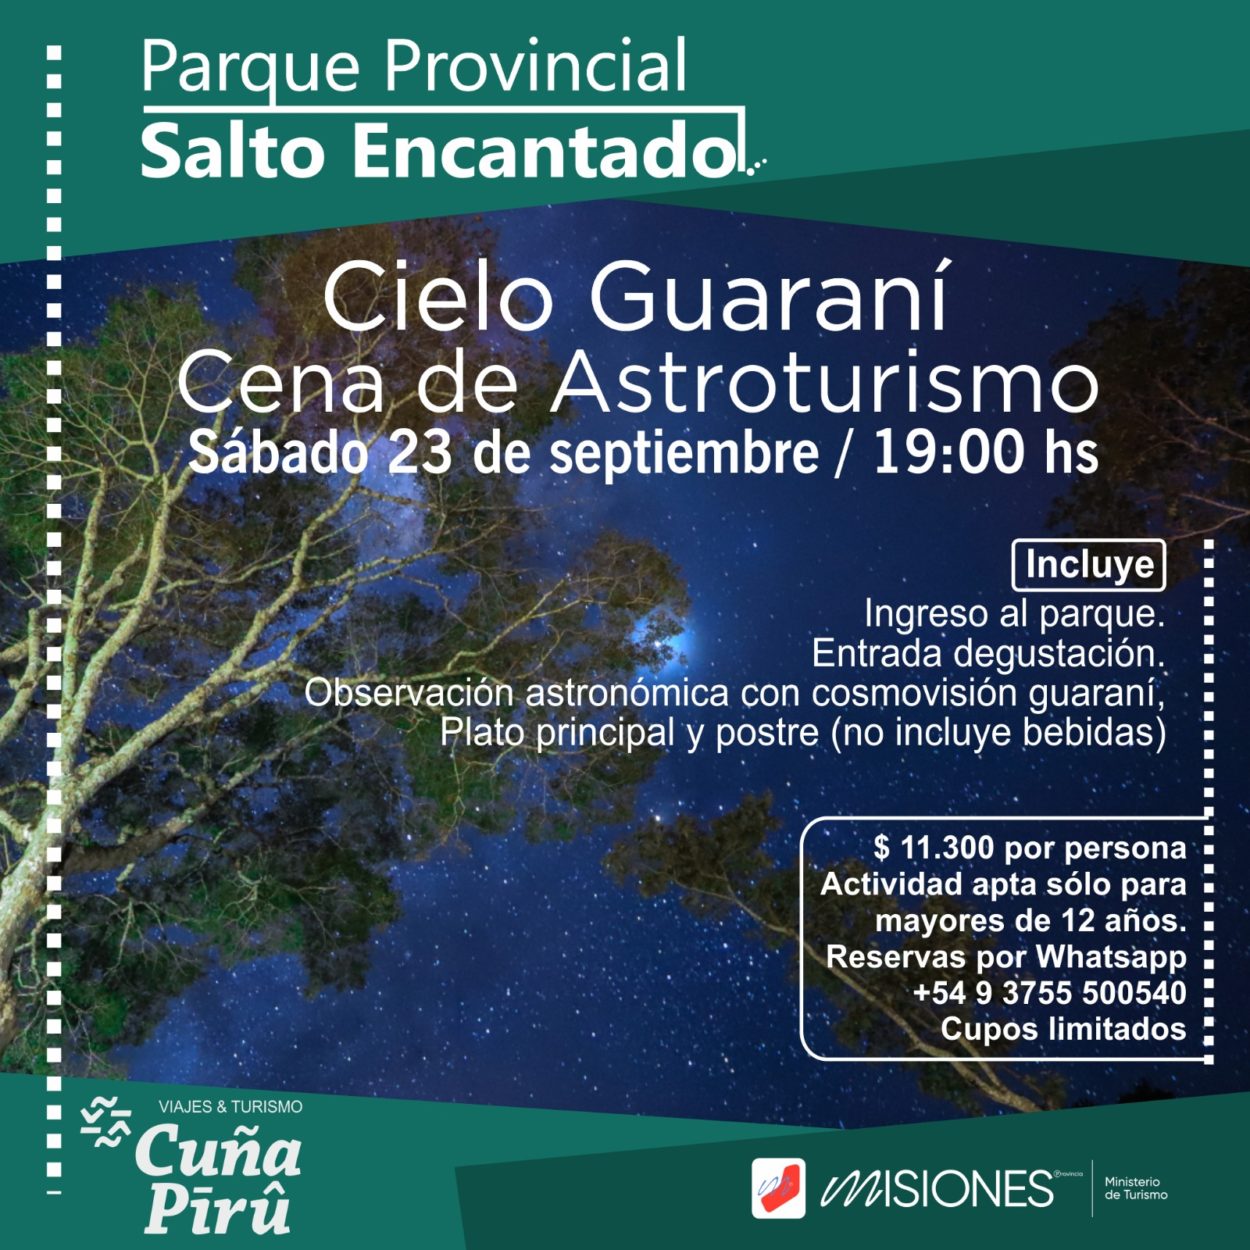 Invitan a la experiencia “Cielo Guaraní - Cena de Astroturismo” en Salto Encantado imagen-2